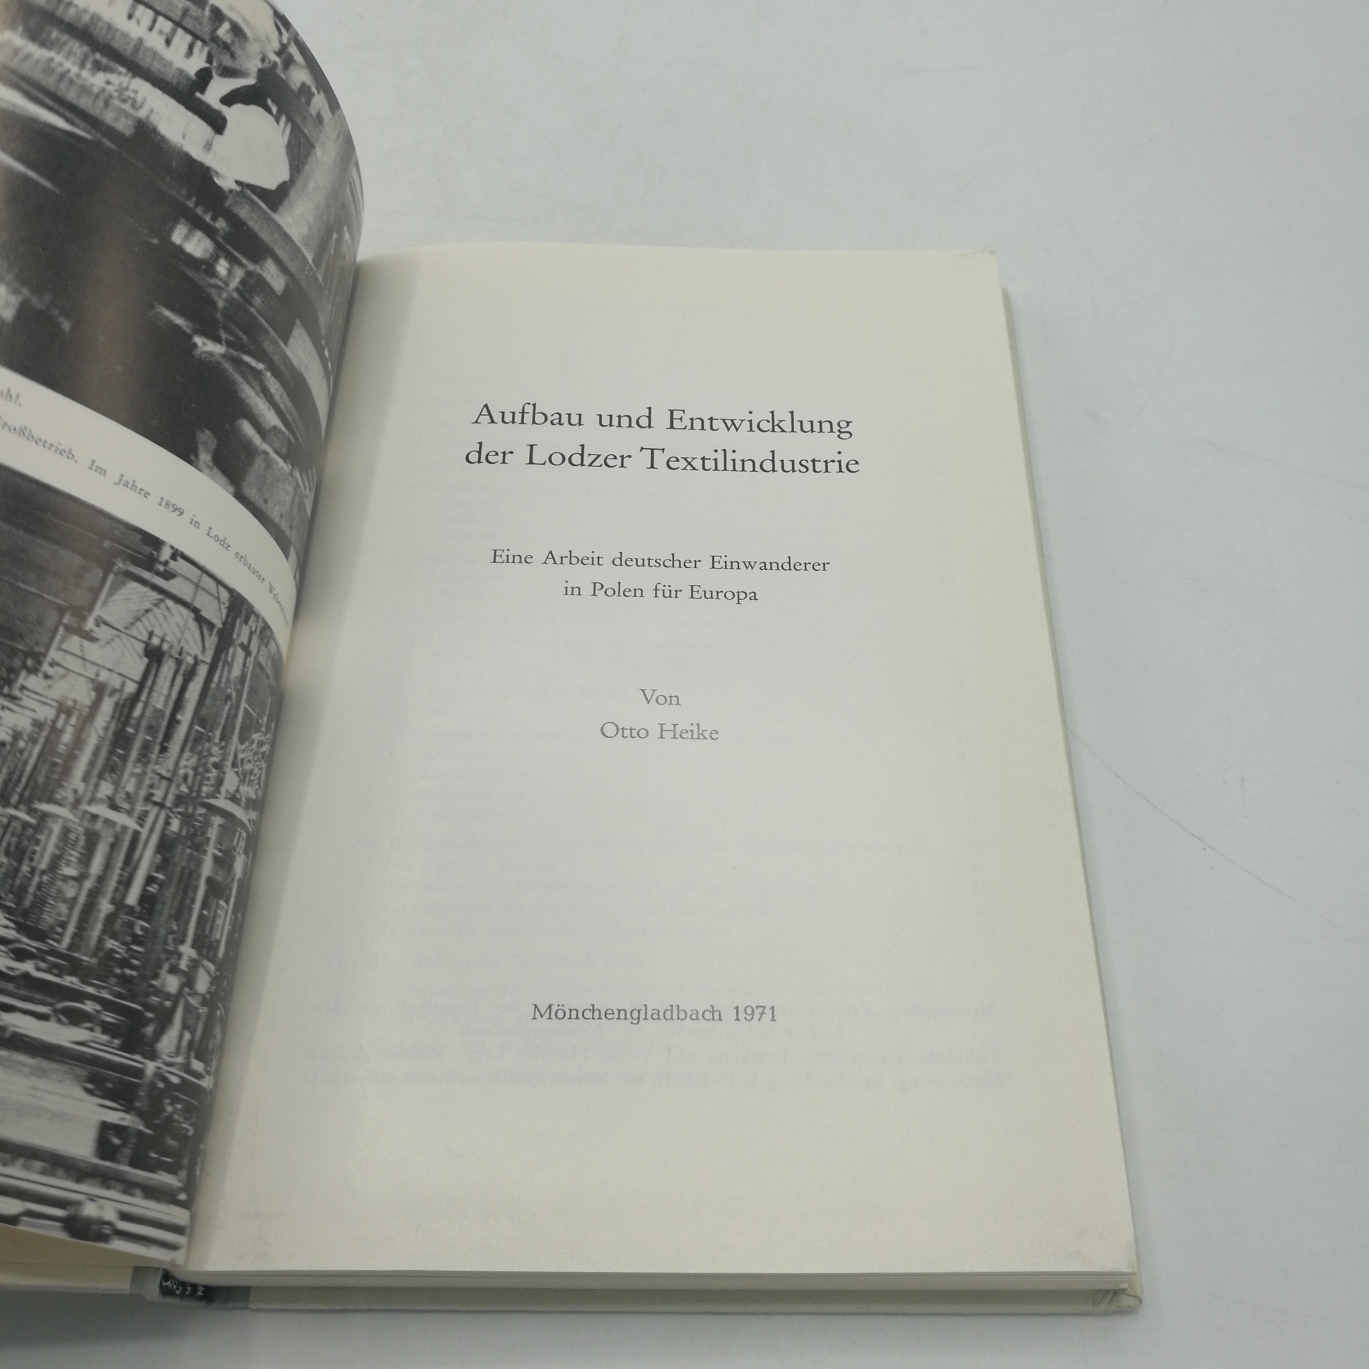 Heike, Otto: Aufbau und Entwicklung der Lodzer Textilindustrie. Eine Arbeit deutscher Einwanderer in Polen für Europa 